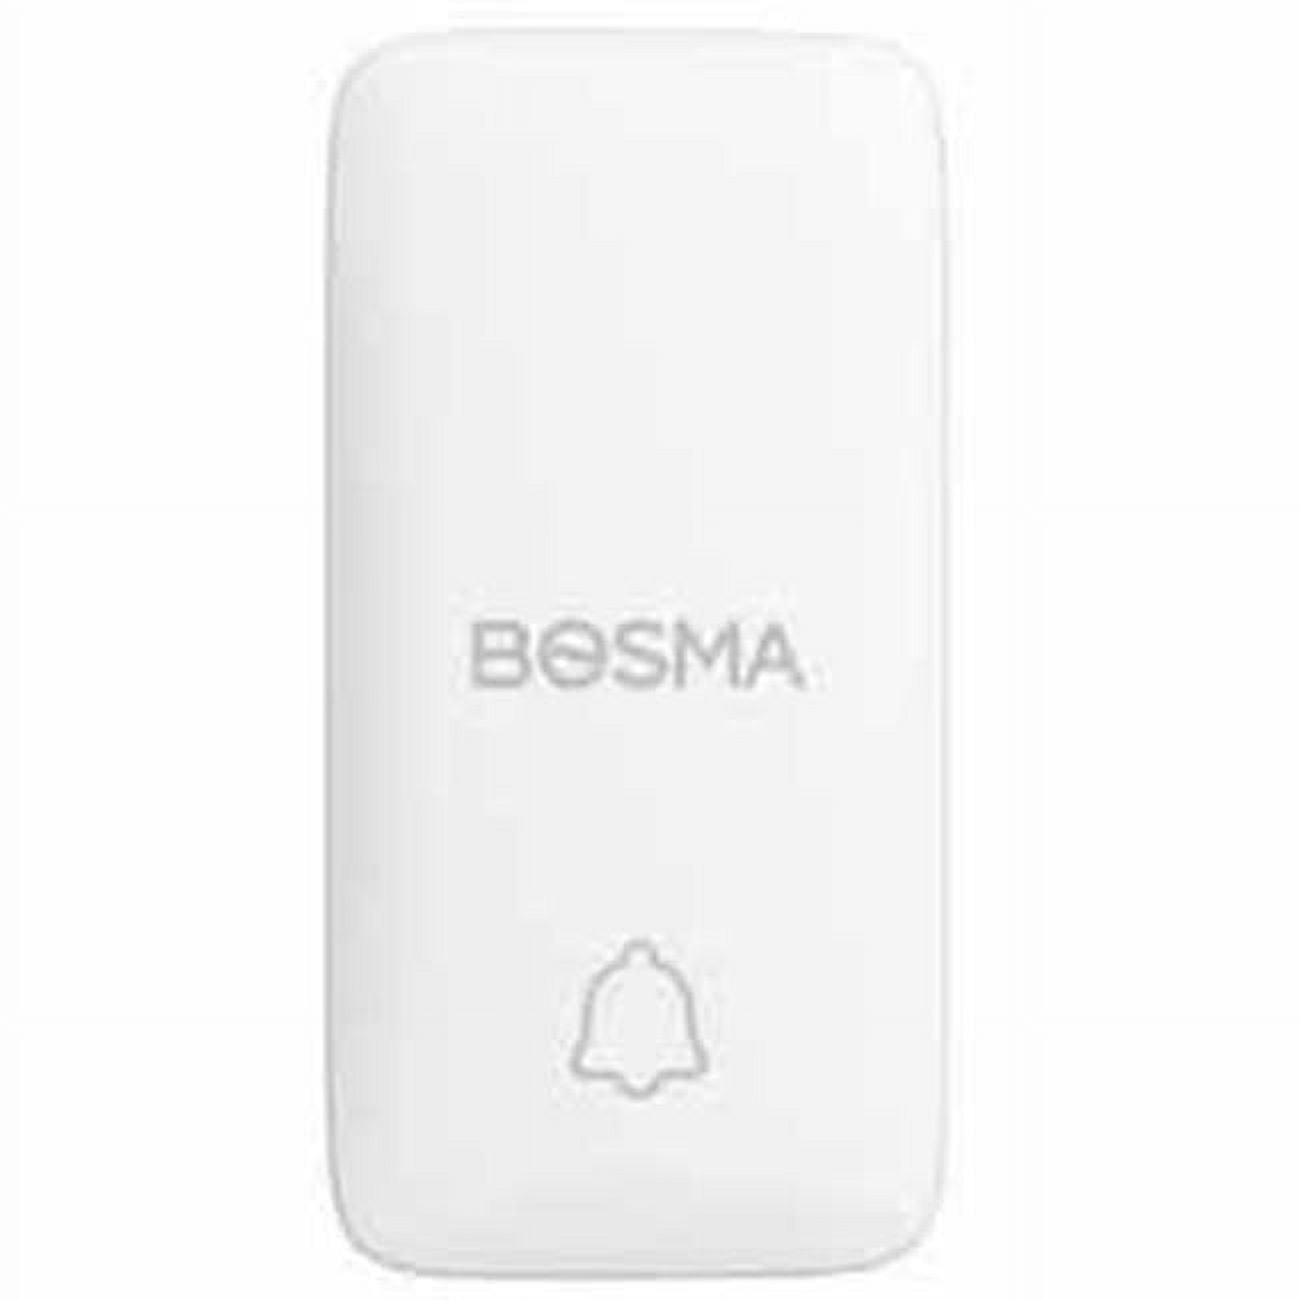 Picture of Bosma 1SB-US Smart Button, White